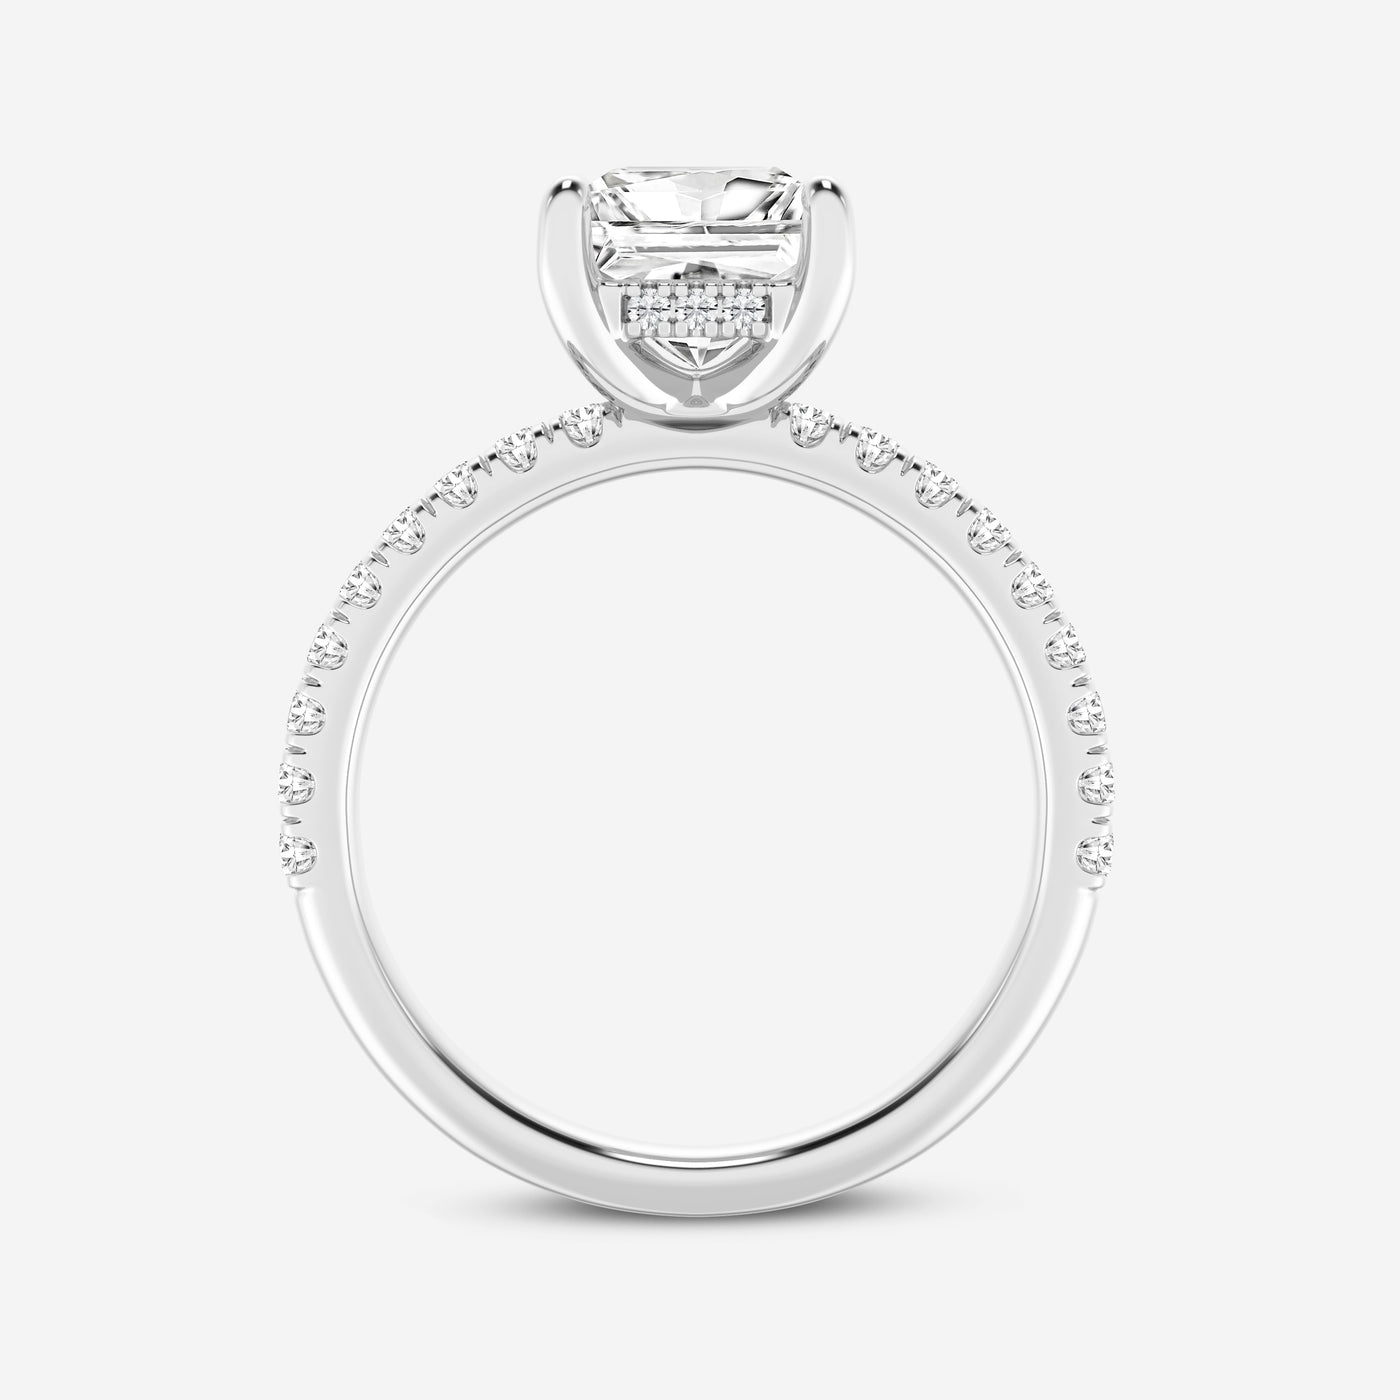 @SKU:LGRVR06539P200PL4~#carat_2.39#diamond-quality_ef,-vs2+#metal_platinum